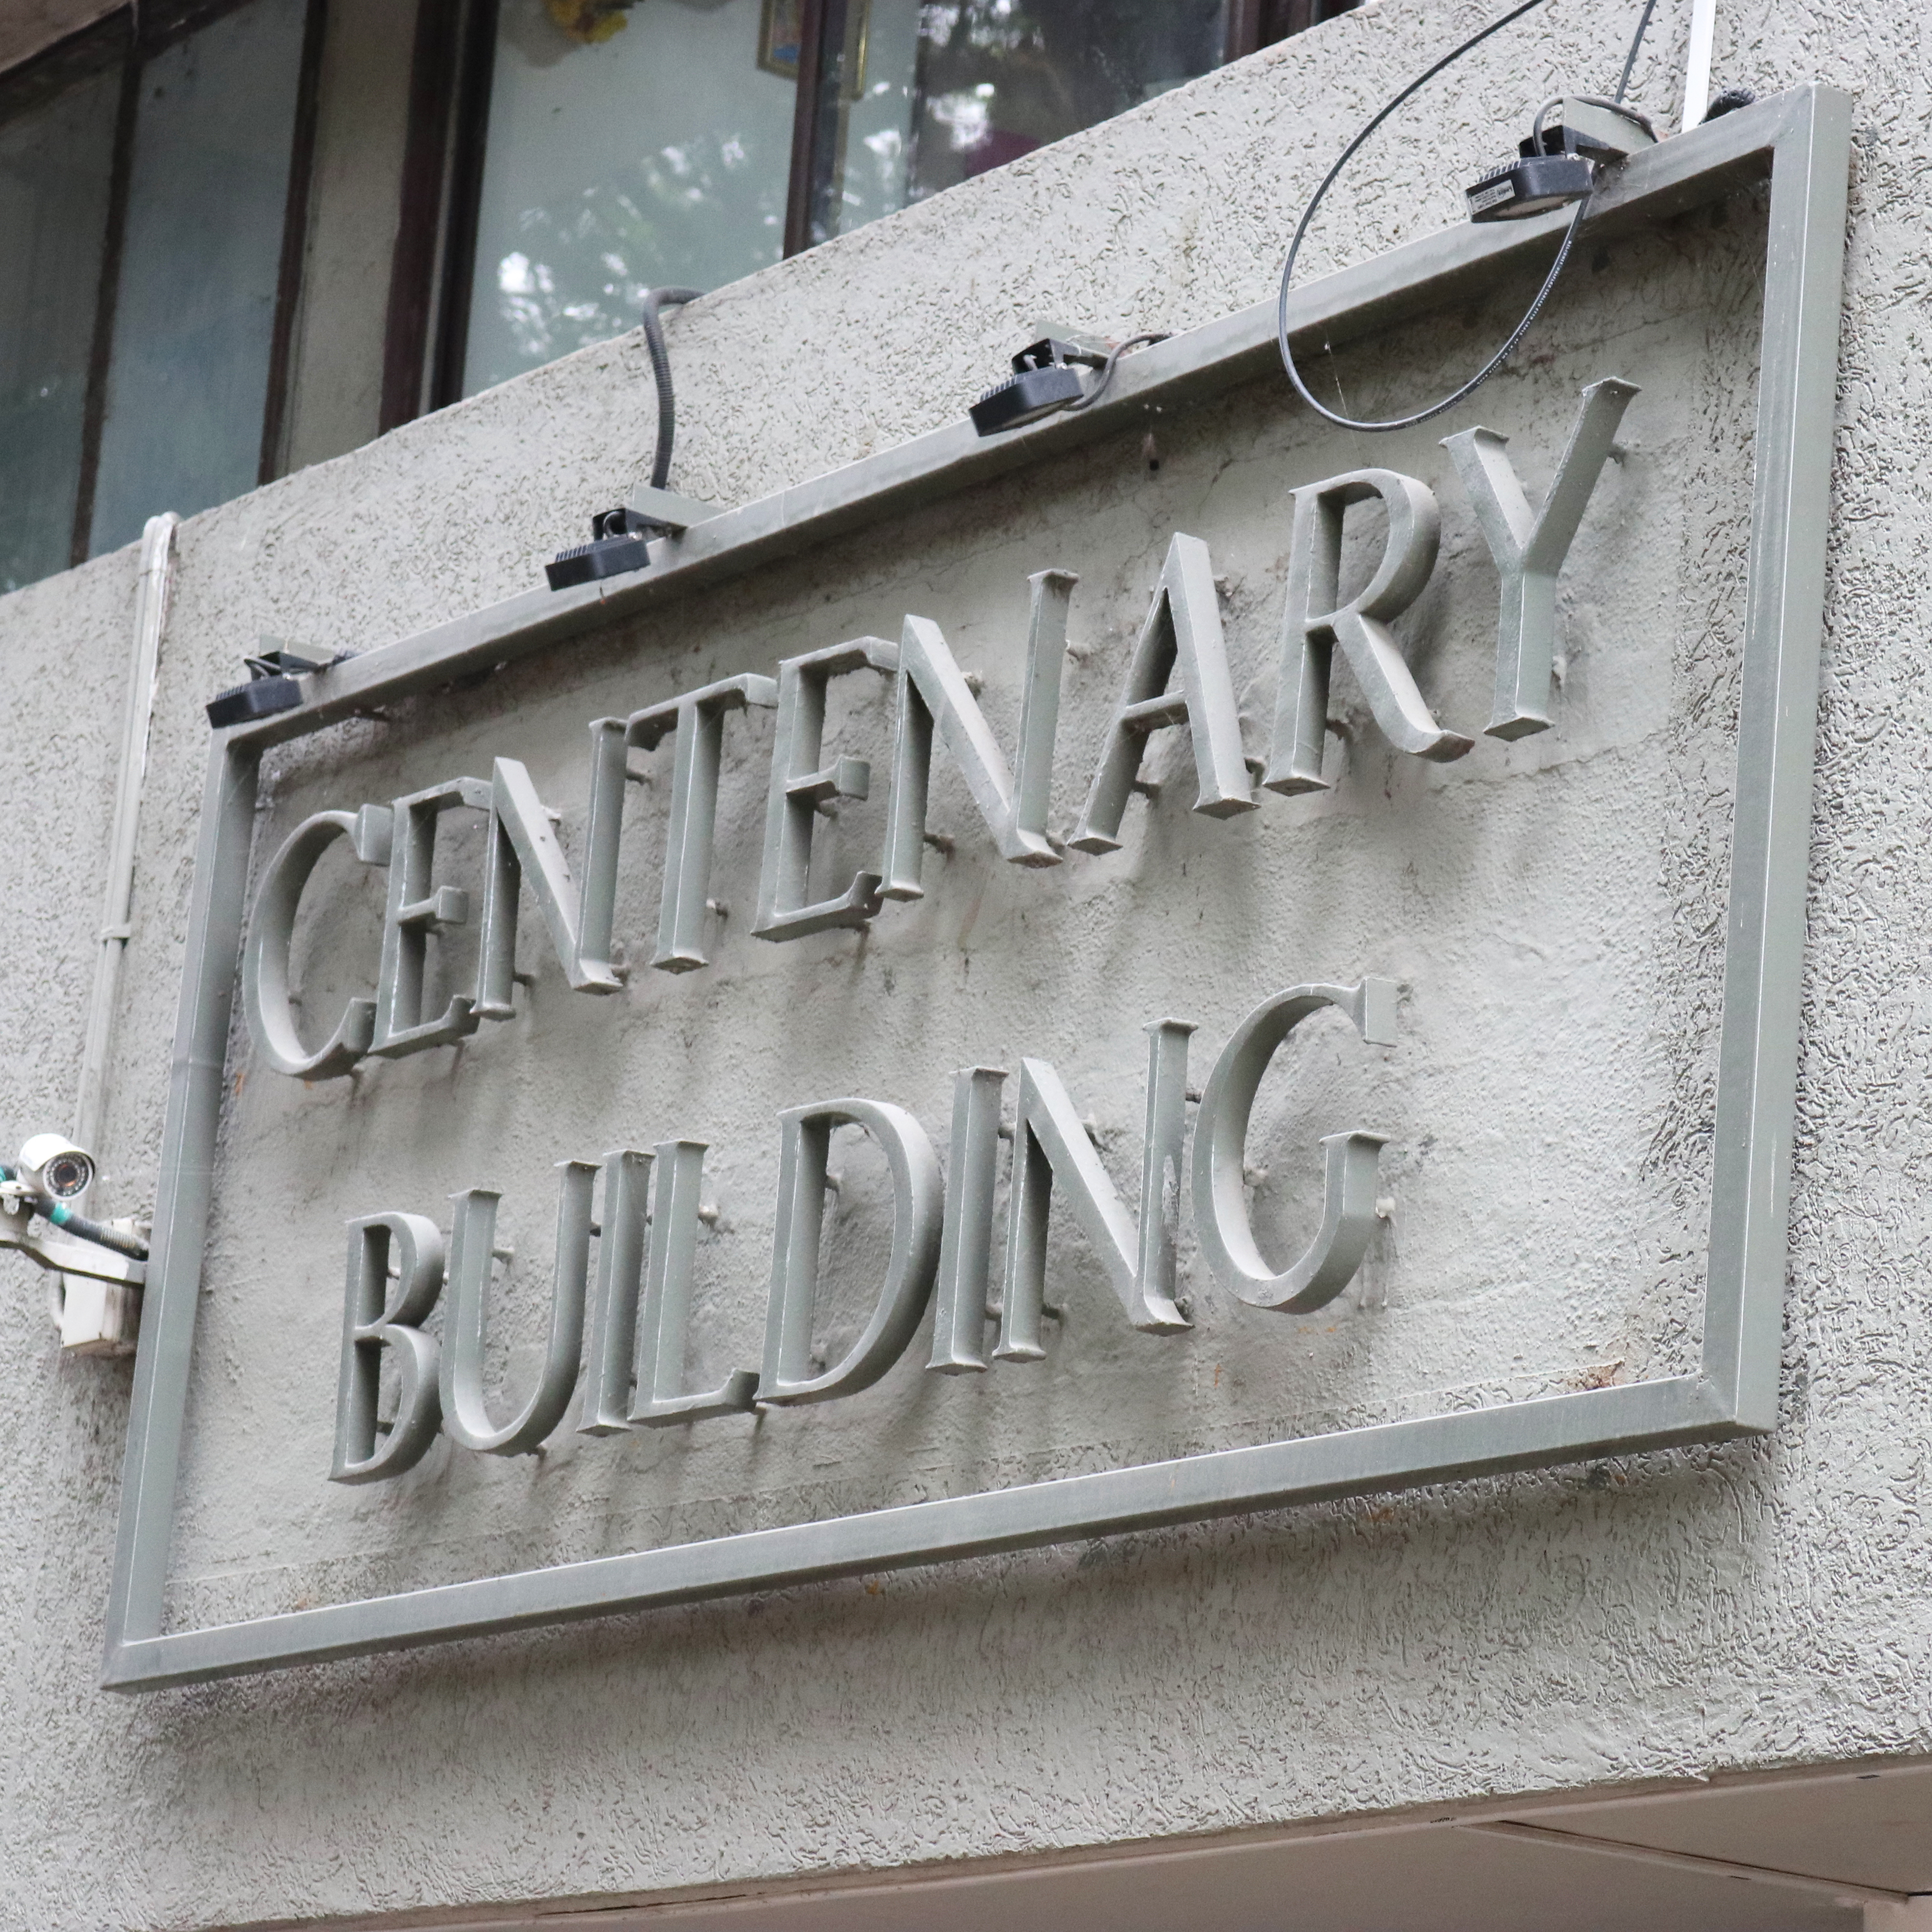 Centenary Building